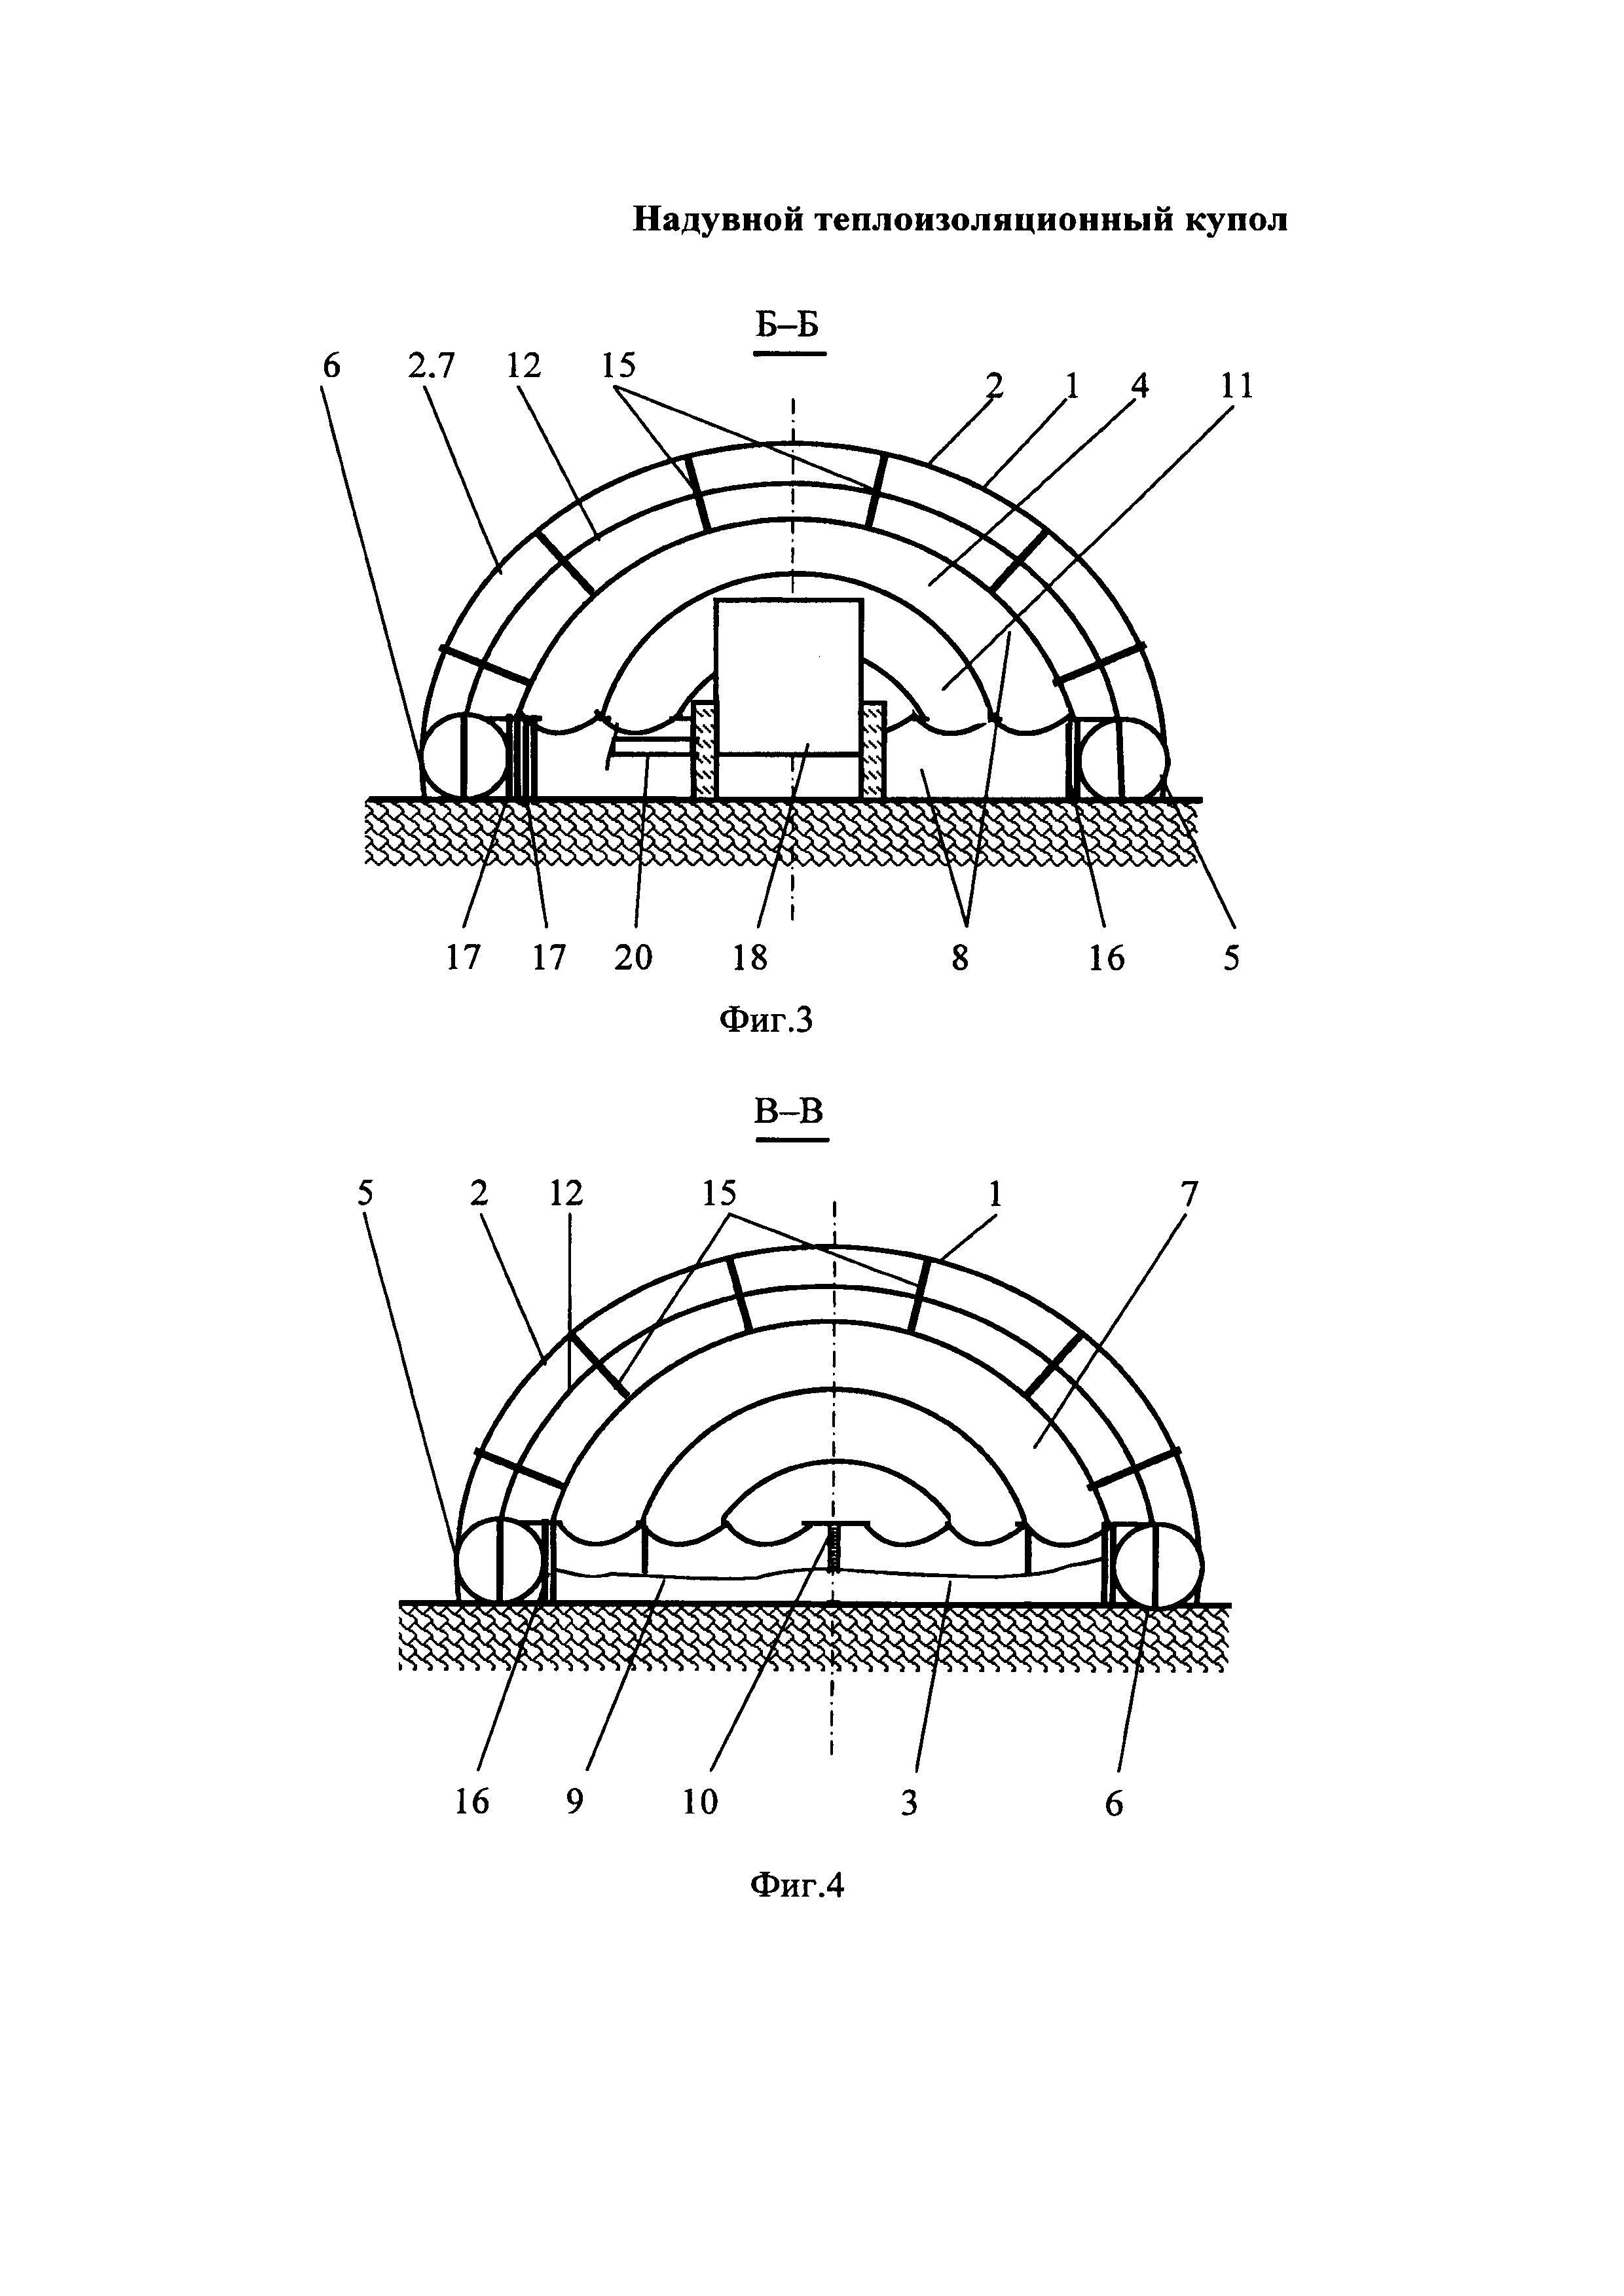 Надувной теплоизоляционный купол